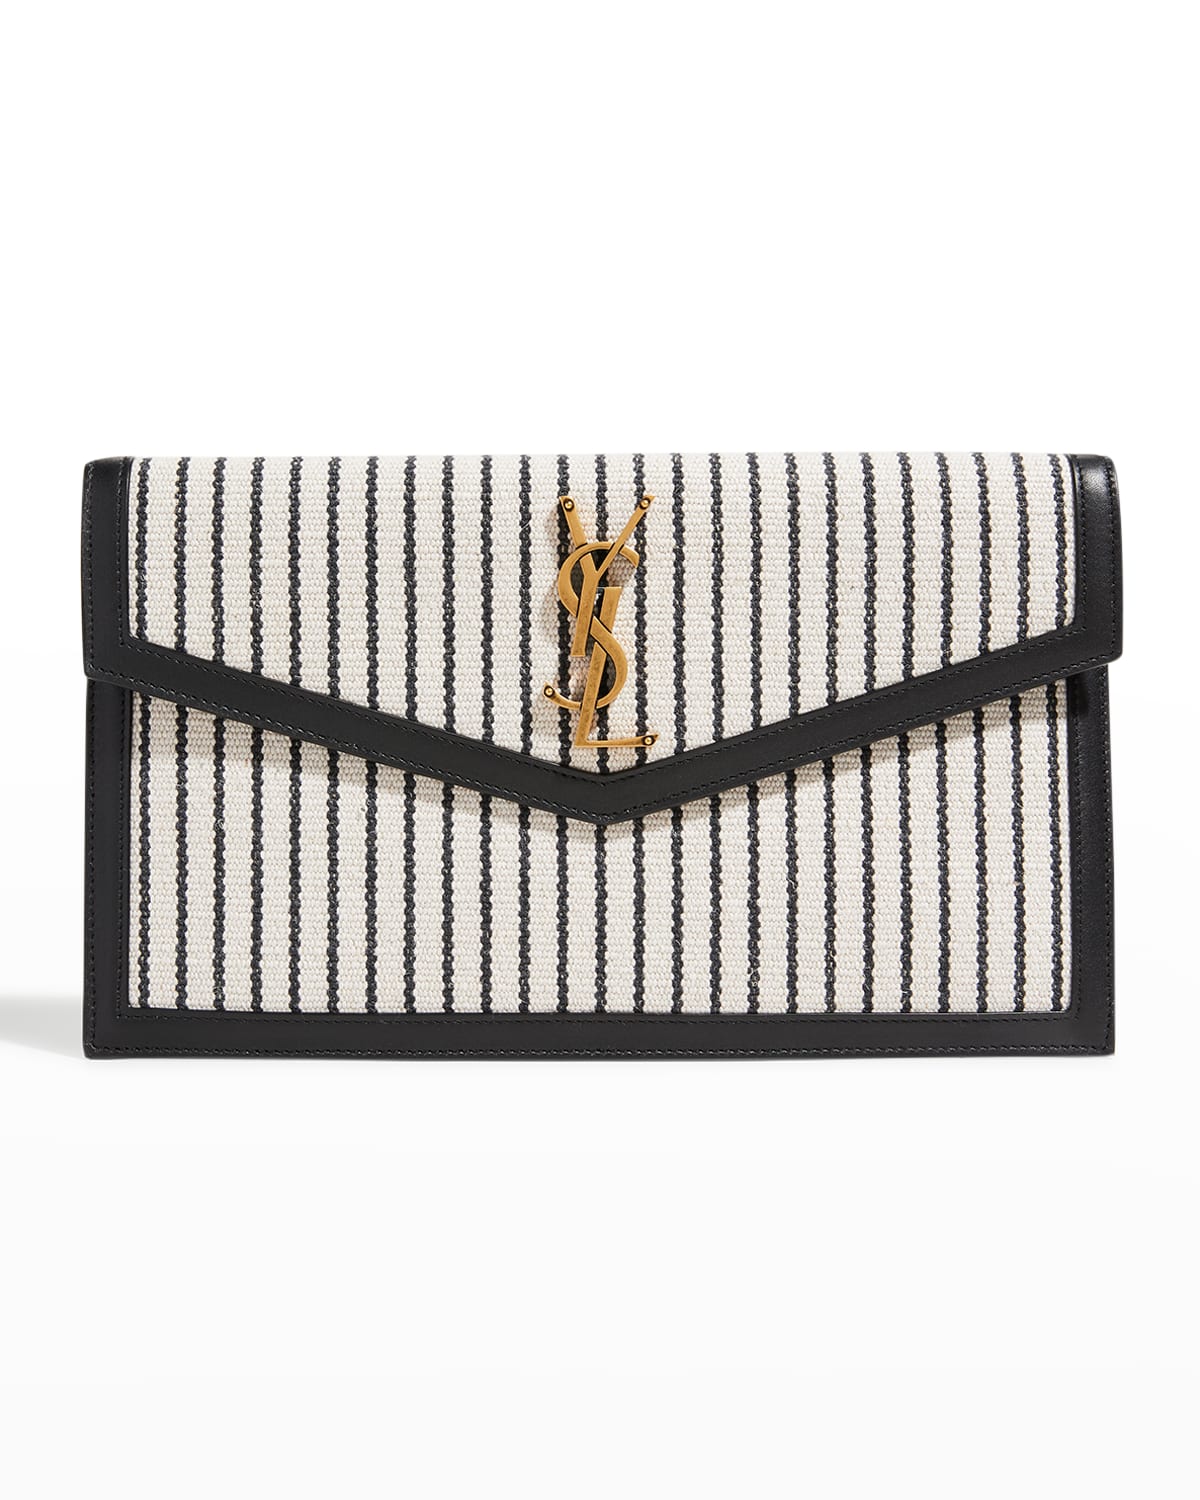 Saint Laurent Clutch Bag | Neiman Marcus